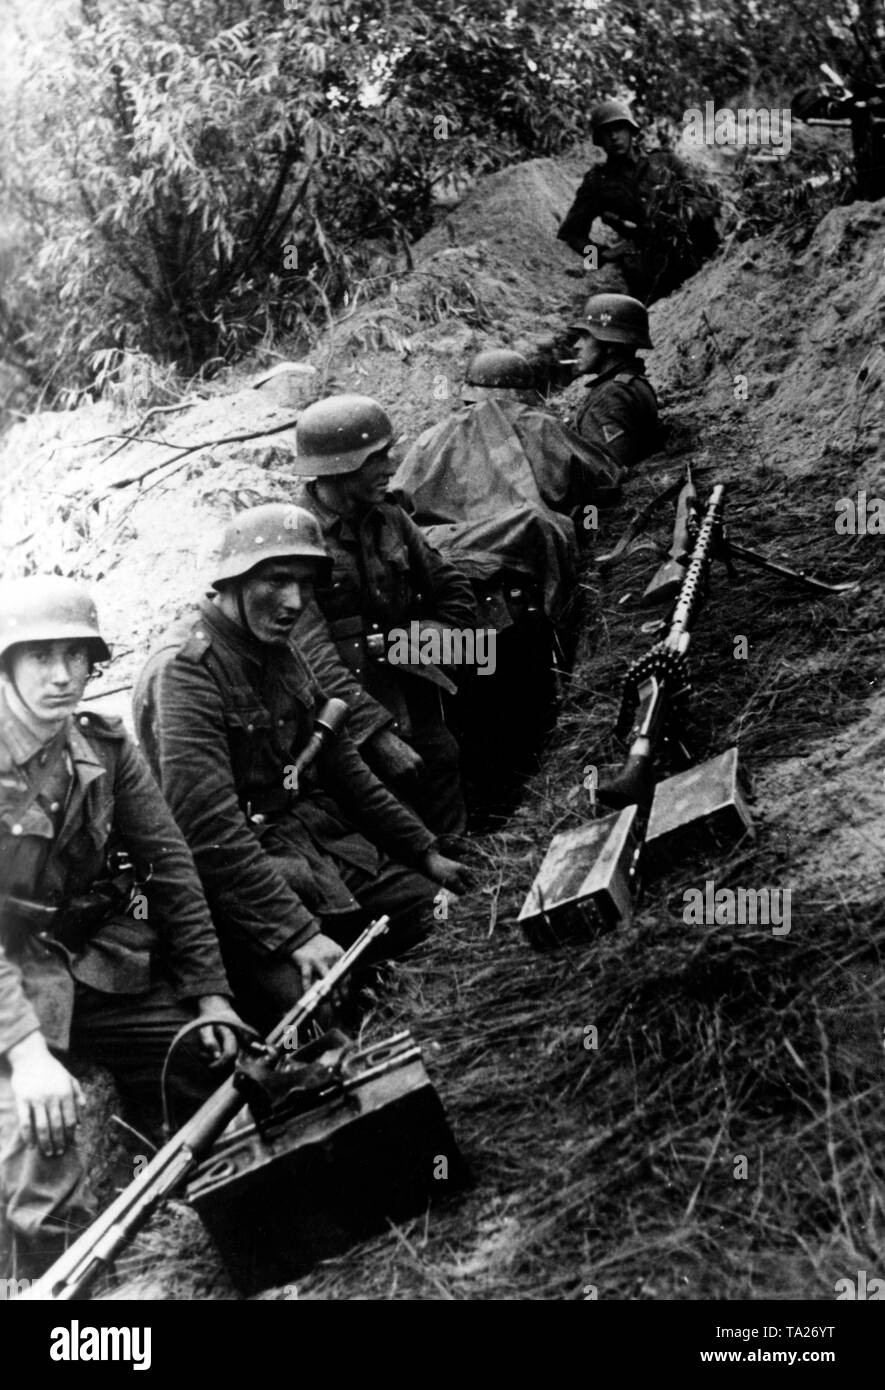 Deutsche Soldaten in einem Graben, während einer Pause in den Kämpfen. Vor Ihnen, mehrere Gewehre und ein Maschinengewehr 34 auf der Hand. Foto der Propaganda Firma (PK): kriegsberichterstatter Lachmann. Stockfoto